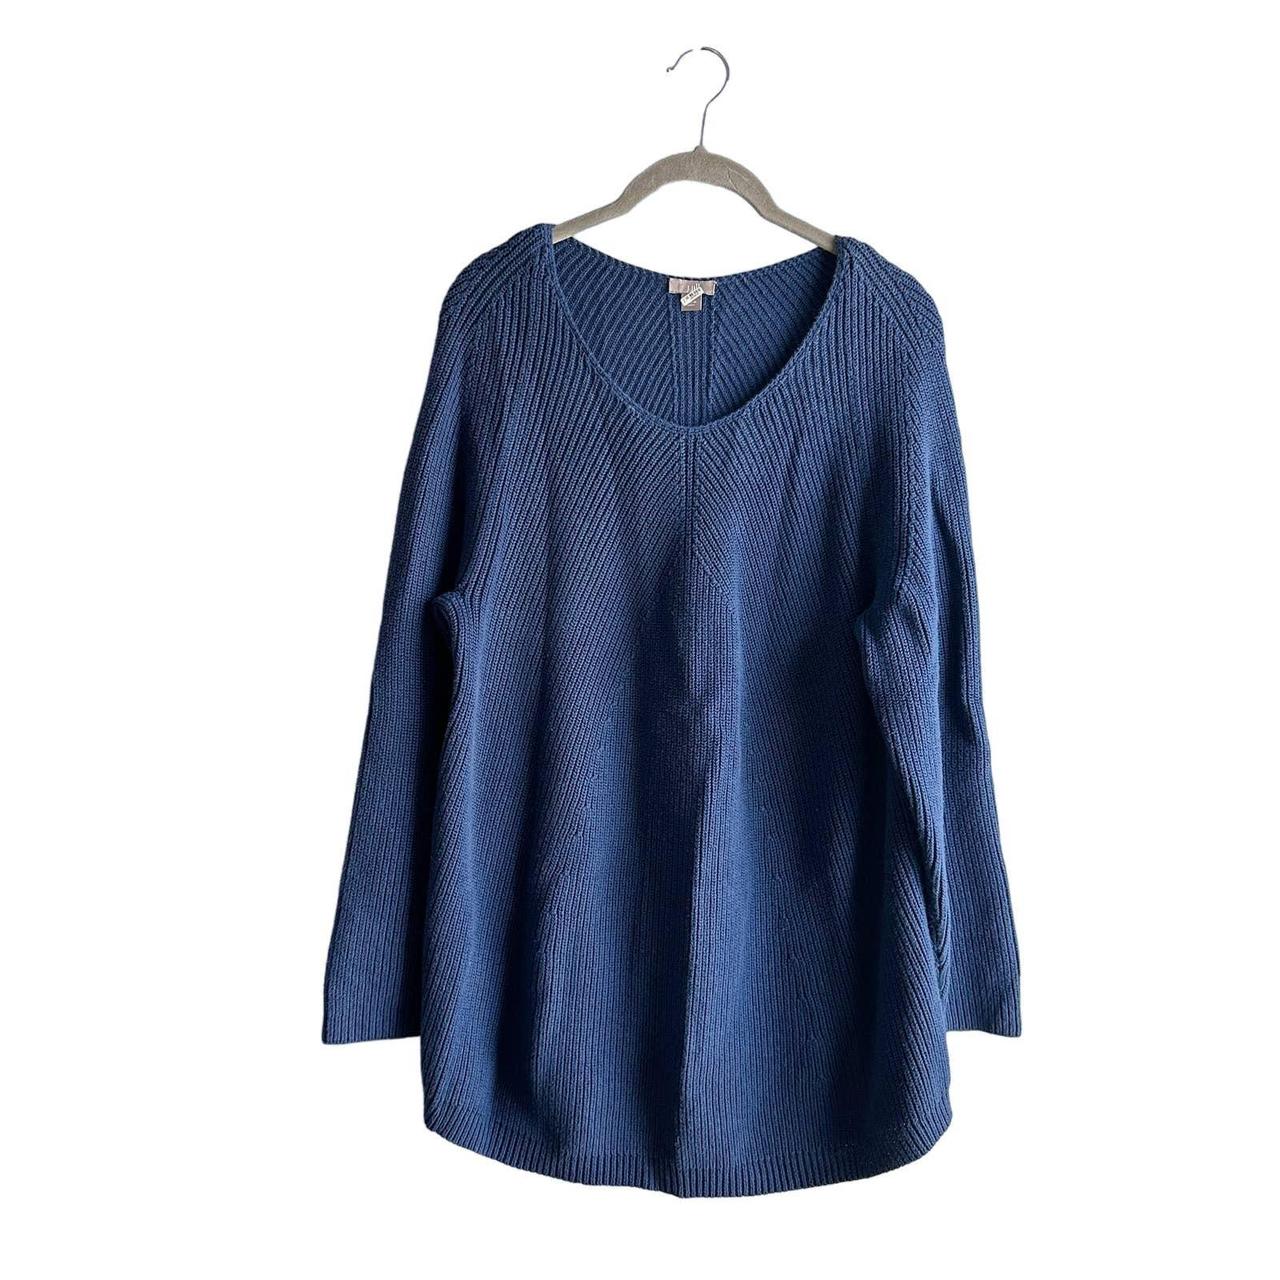 Pure Jill Kimono Blue Sweater Top Womens Small Cotton Cashmere Boxy  0689935329334 on eBid United States